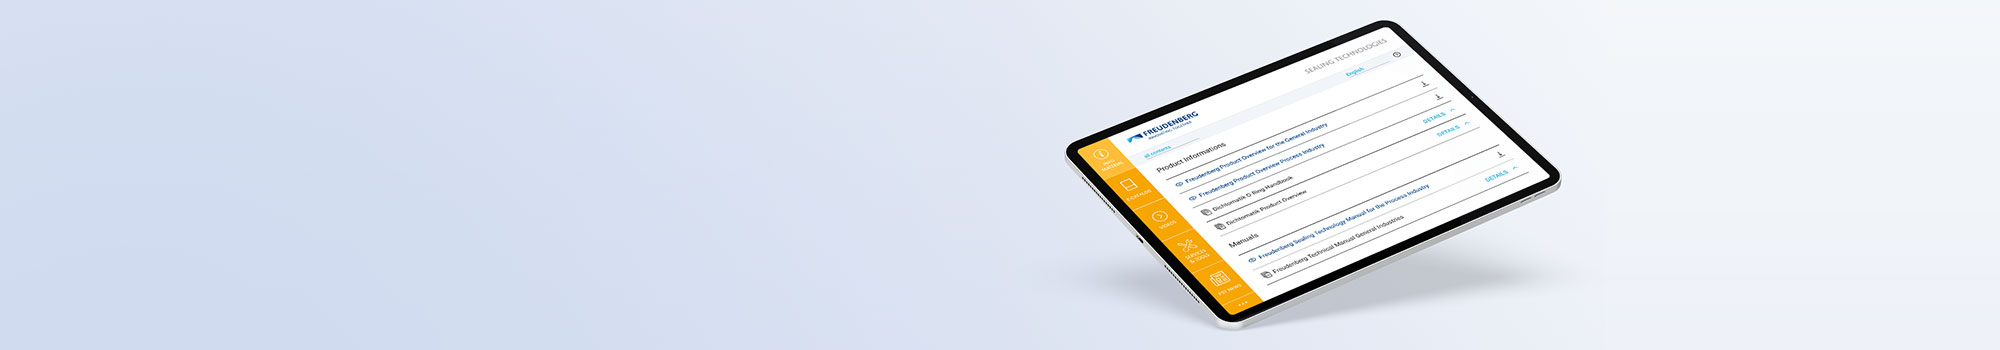 Tablet mit der FST Services App und einer Übersicht der Produktinformationsbroschüren